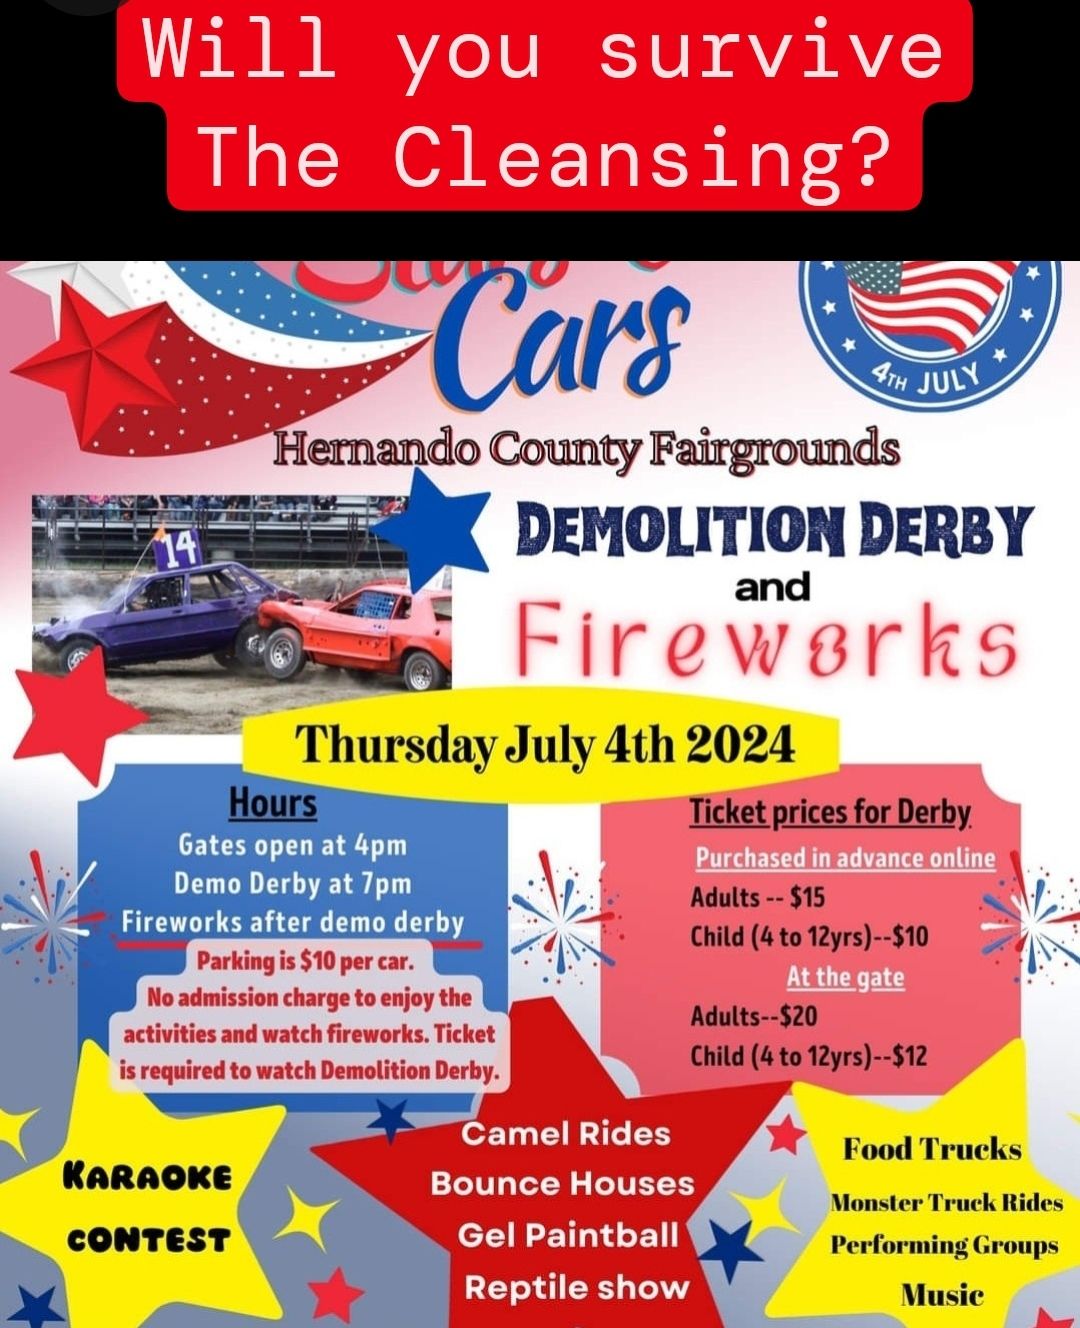 The Cleansing @ Stars & Cars, Demolition Derby & Fireworks \ud83c\uddfa\ud83c\uddf8\ud83c\udf86 